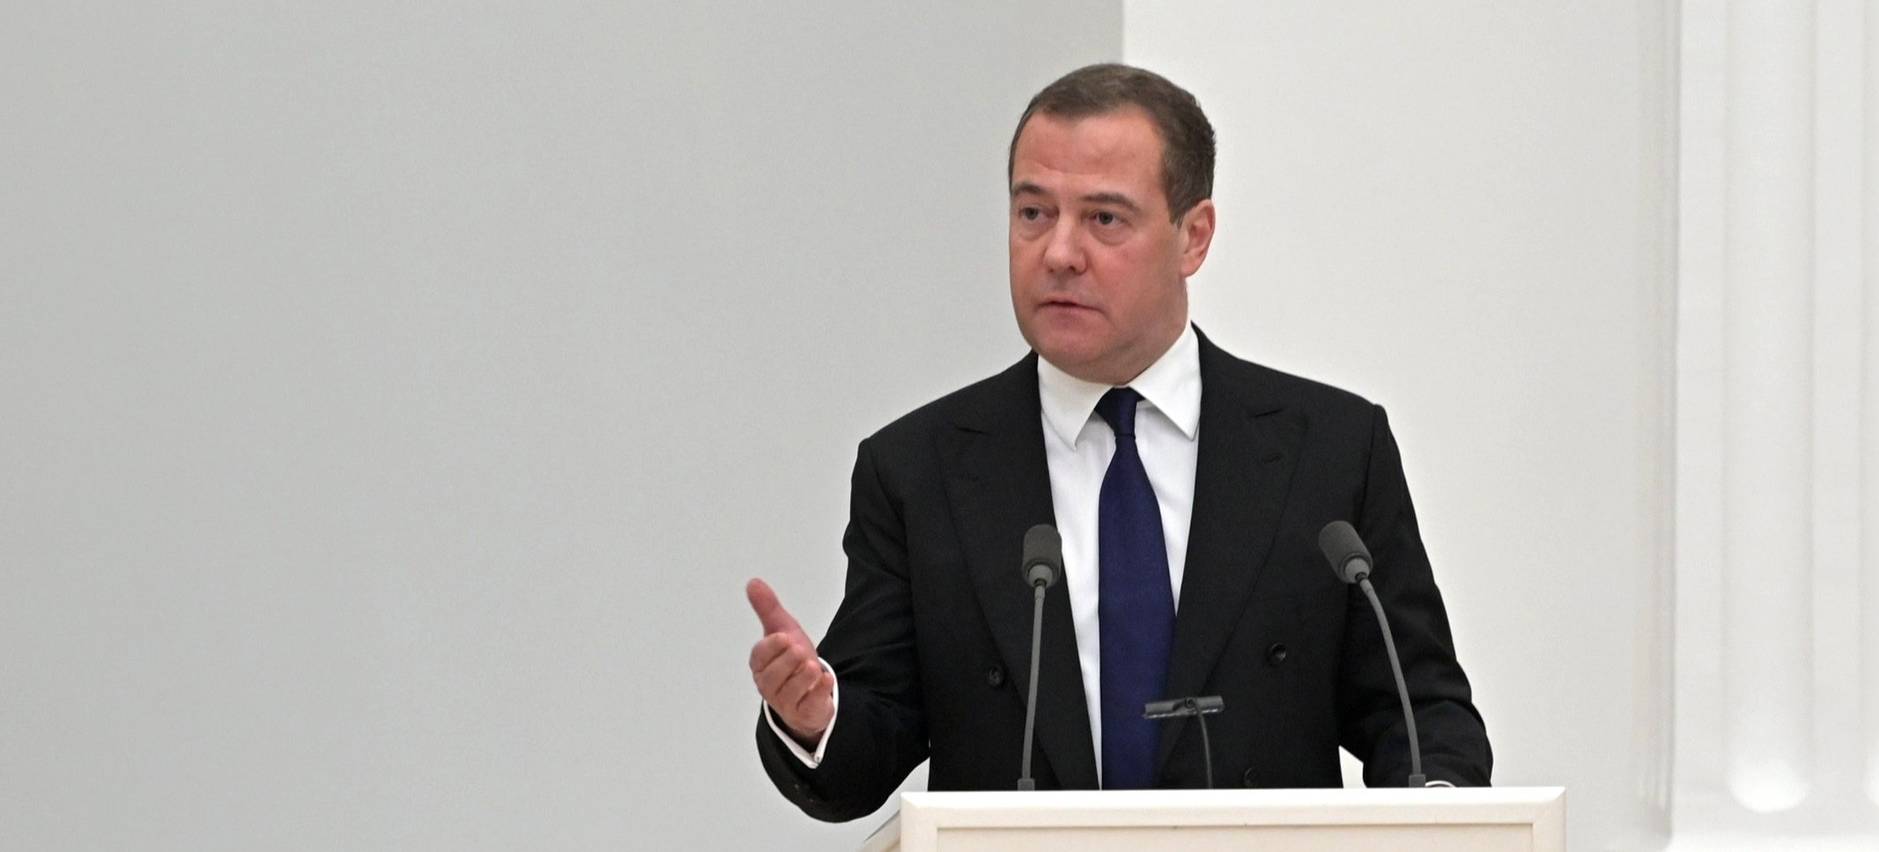 Медведев заявил, что враги России ведут мир к апокалипсису, но РФ такого не допустит